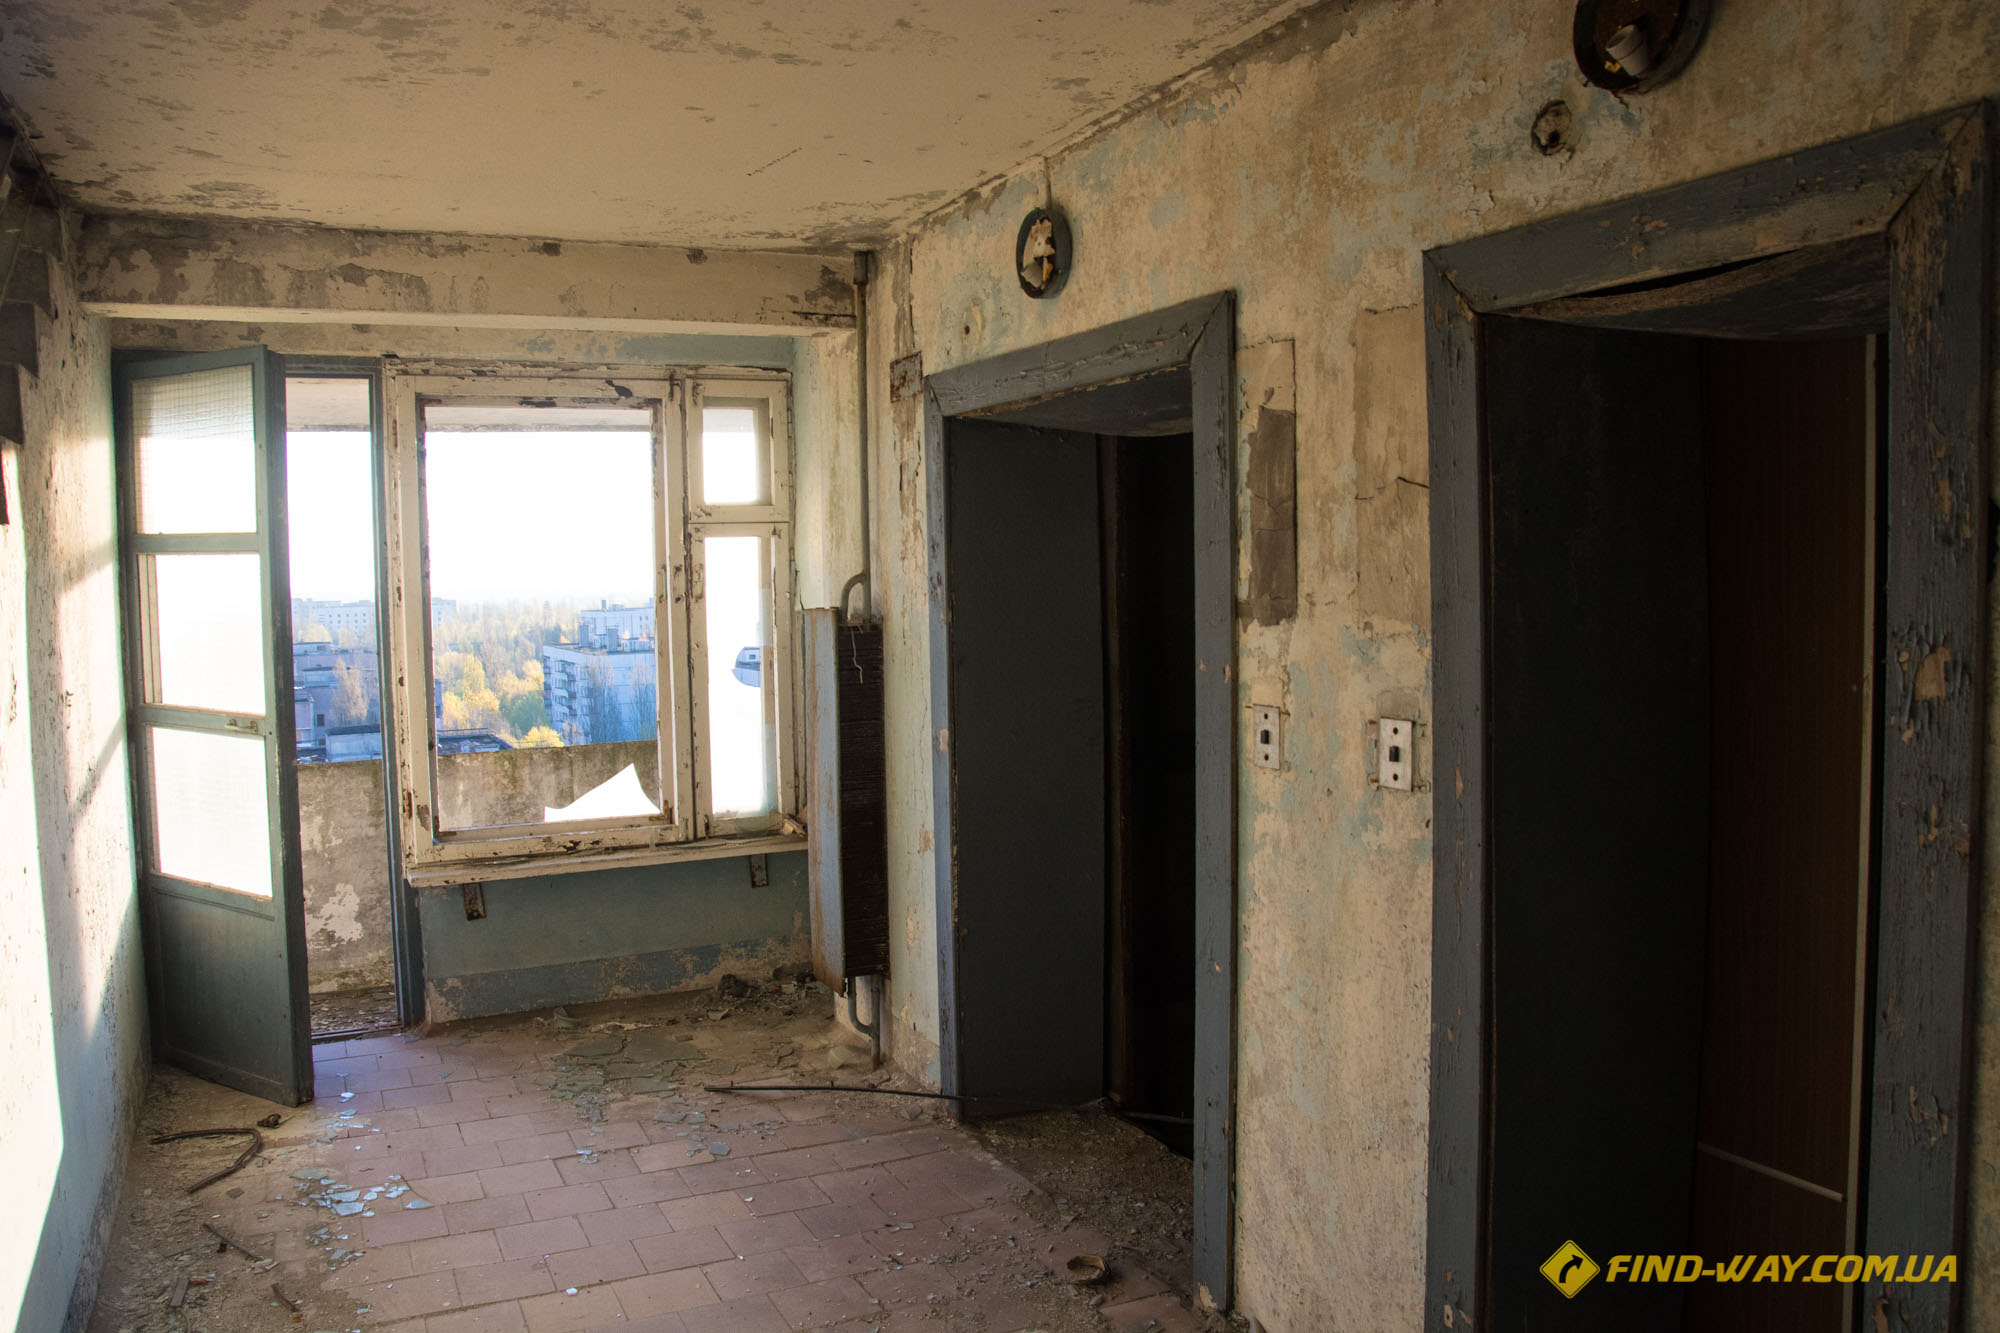 лифты припять фото квартир домов зсередины чернобыль